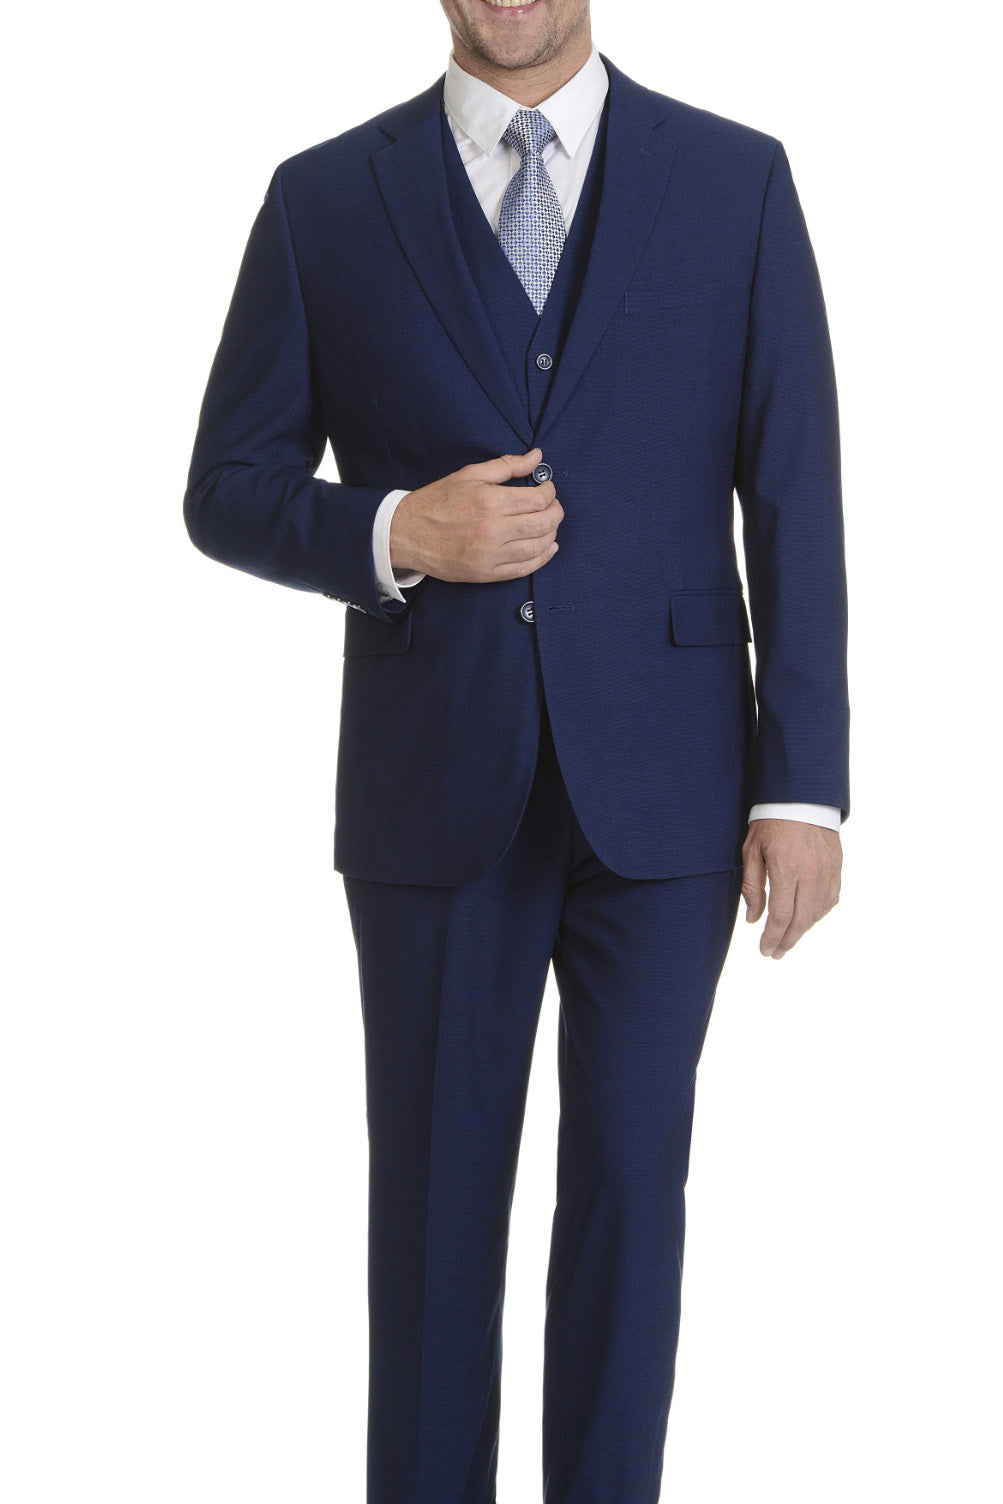 Caravelli Caravelli Solid Cobalt Vested Slim Suit